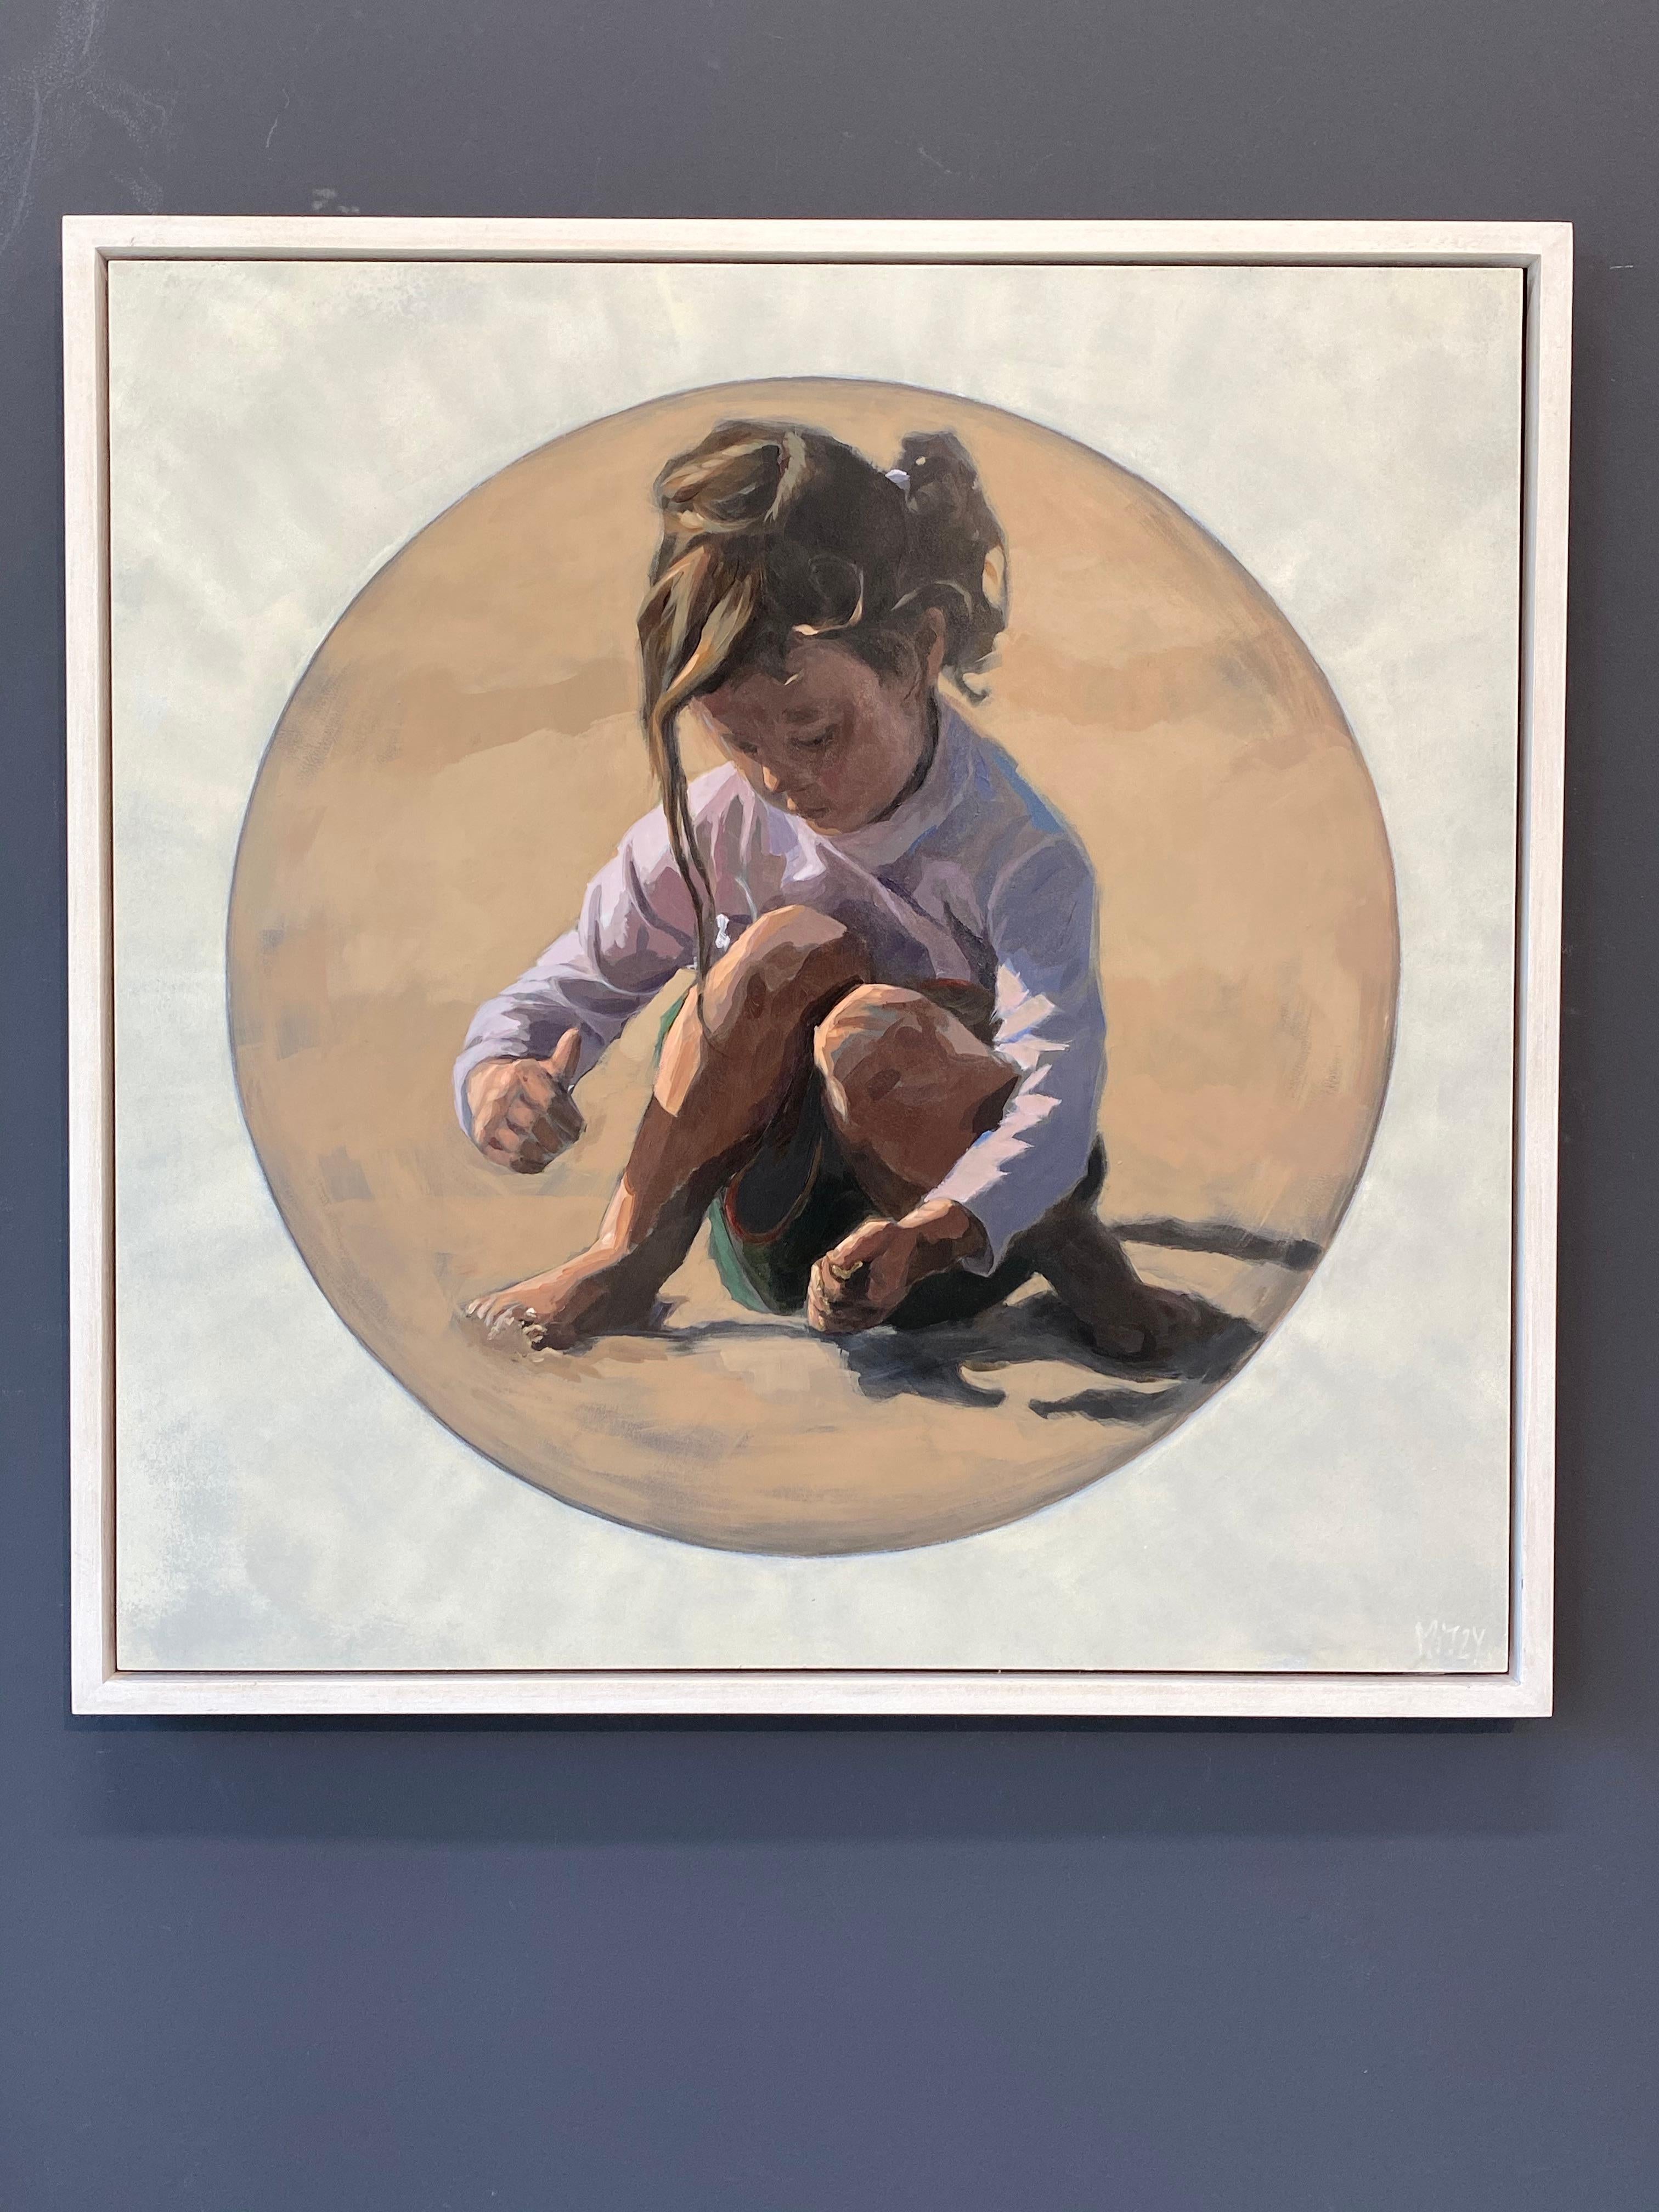 Mitzy Renooy a réalisé cette peinture à l'automne 2019. 
Un enfant qui joue dans l'eau.  L'une de ses inspirations favorites est la façon dont les enfants se déplacent et restent dans leur propre monde. 

Ce tableau impressionne par la simplicité